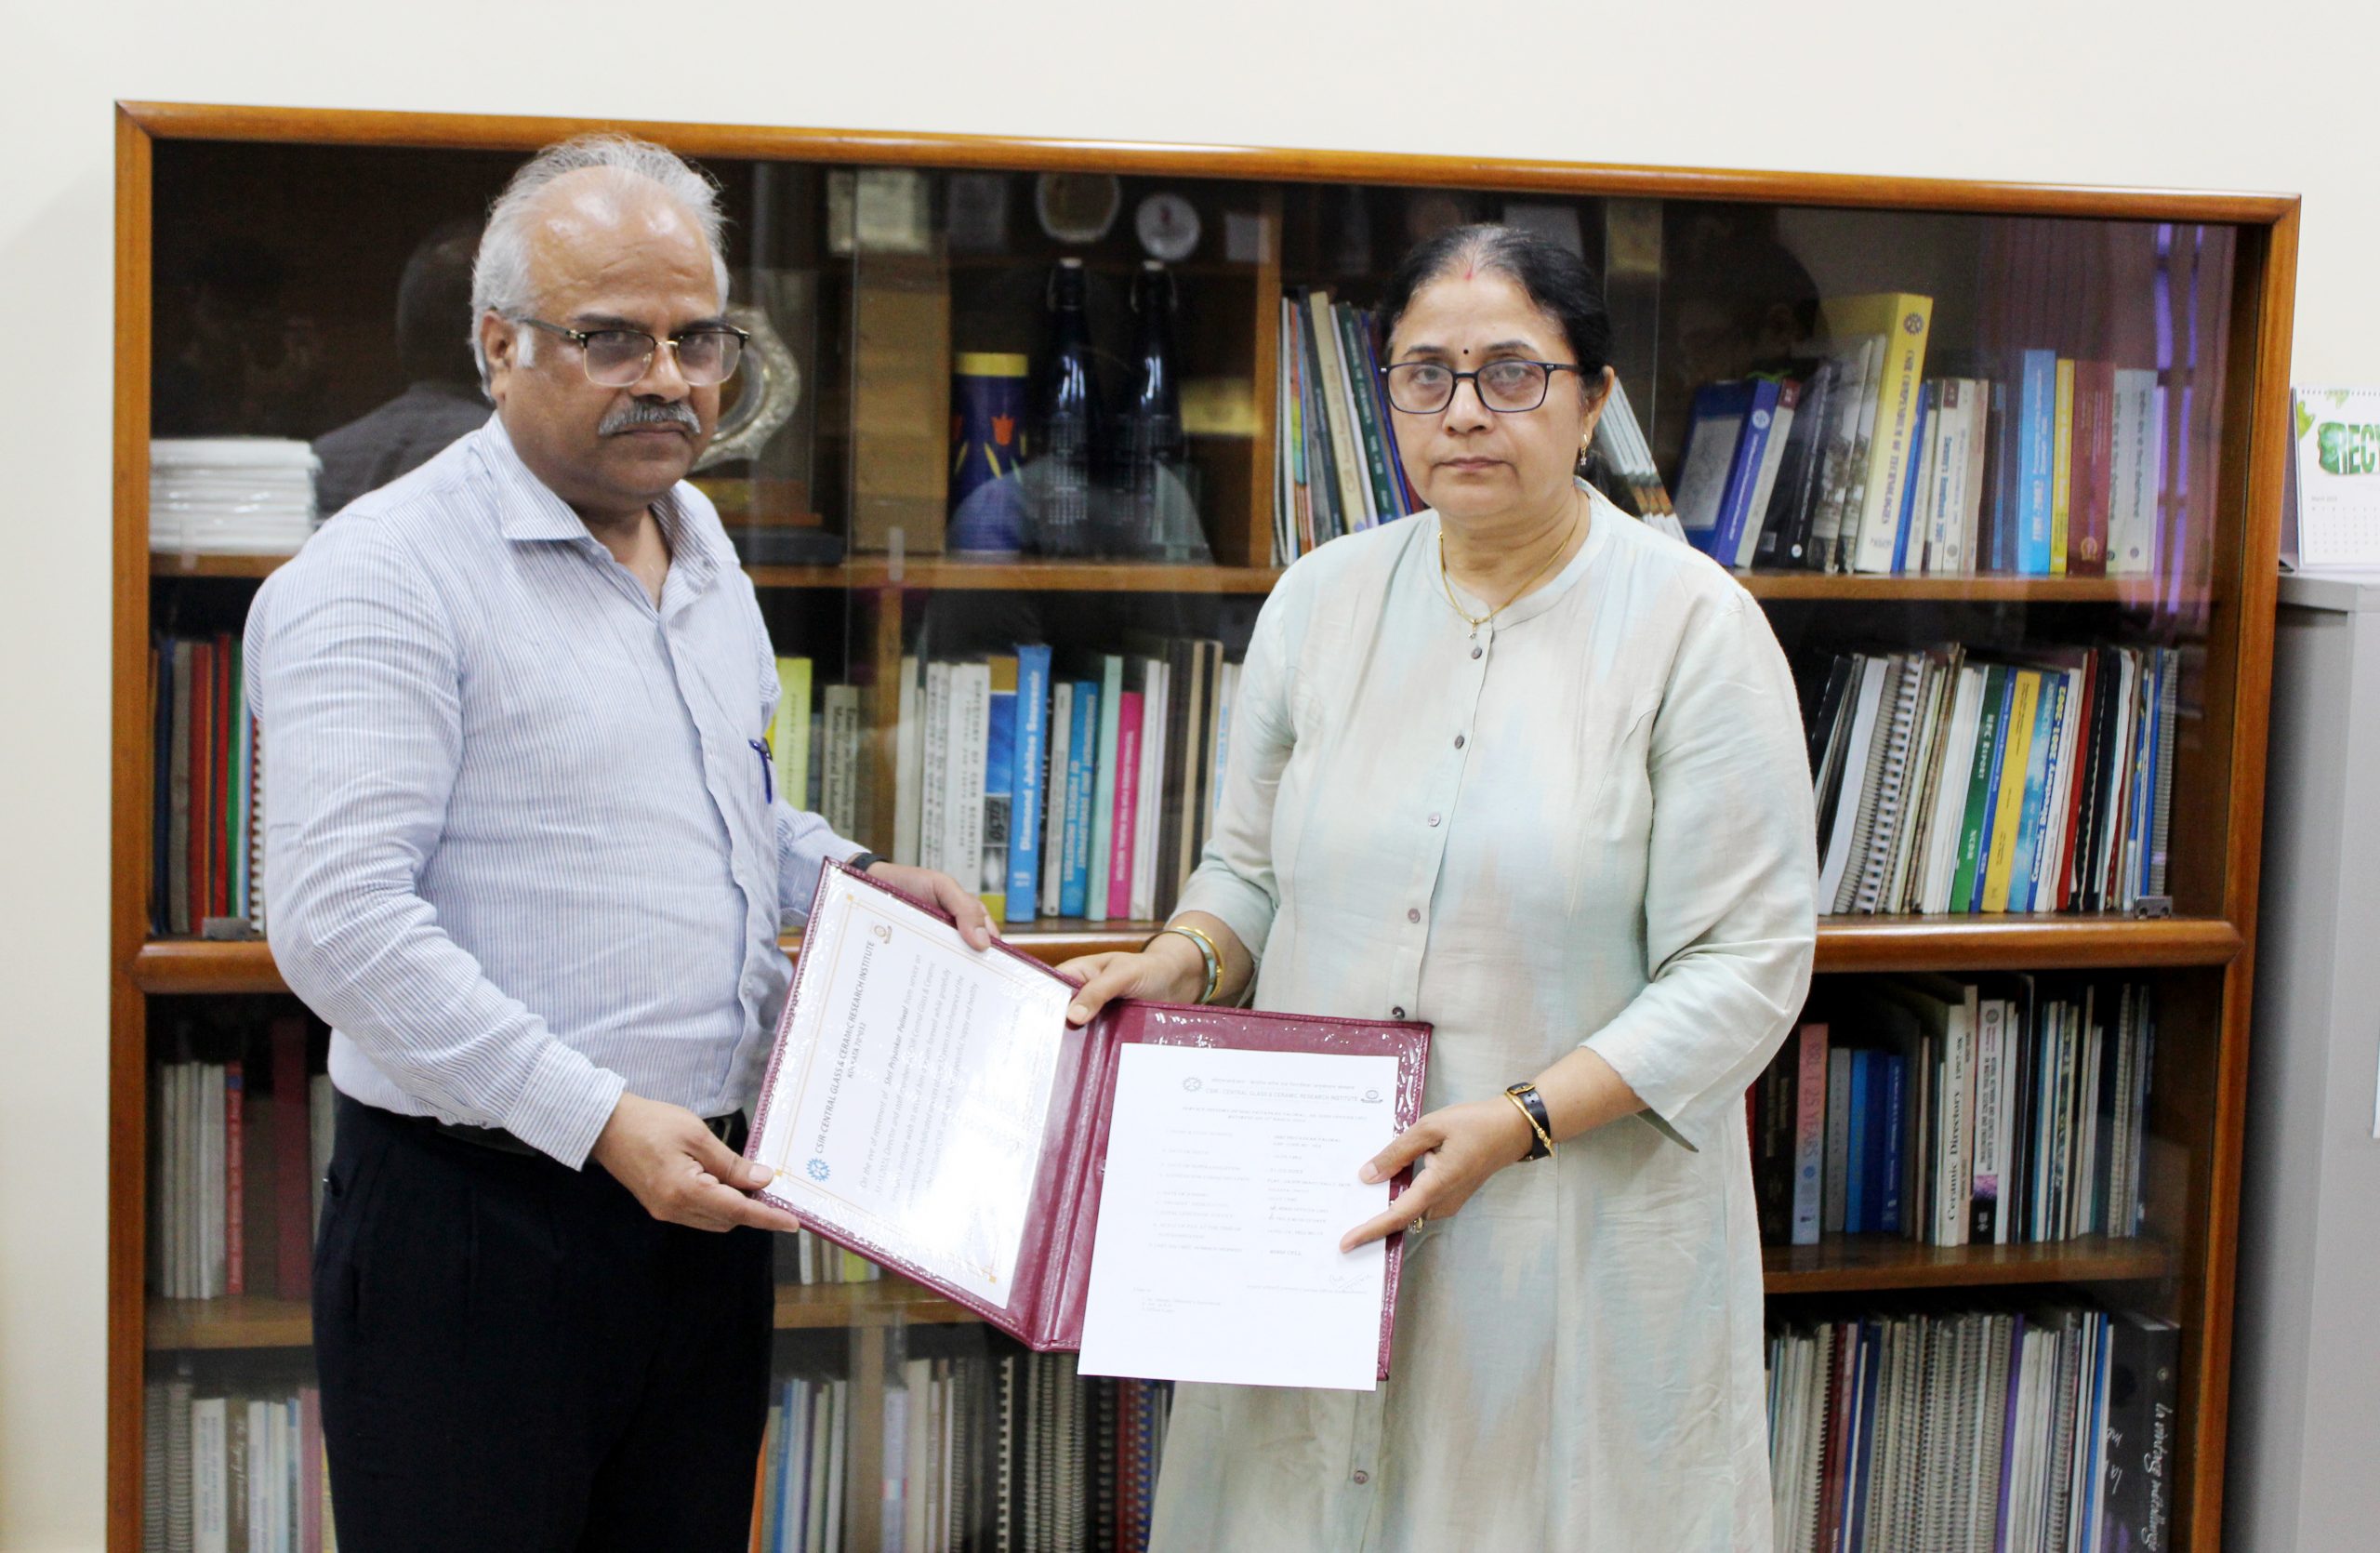 Director presenting retirement certificate to Sri Priyankar Paliwal